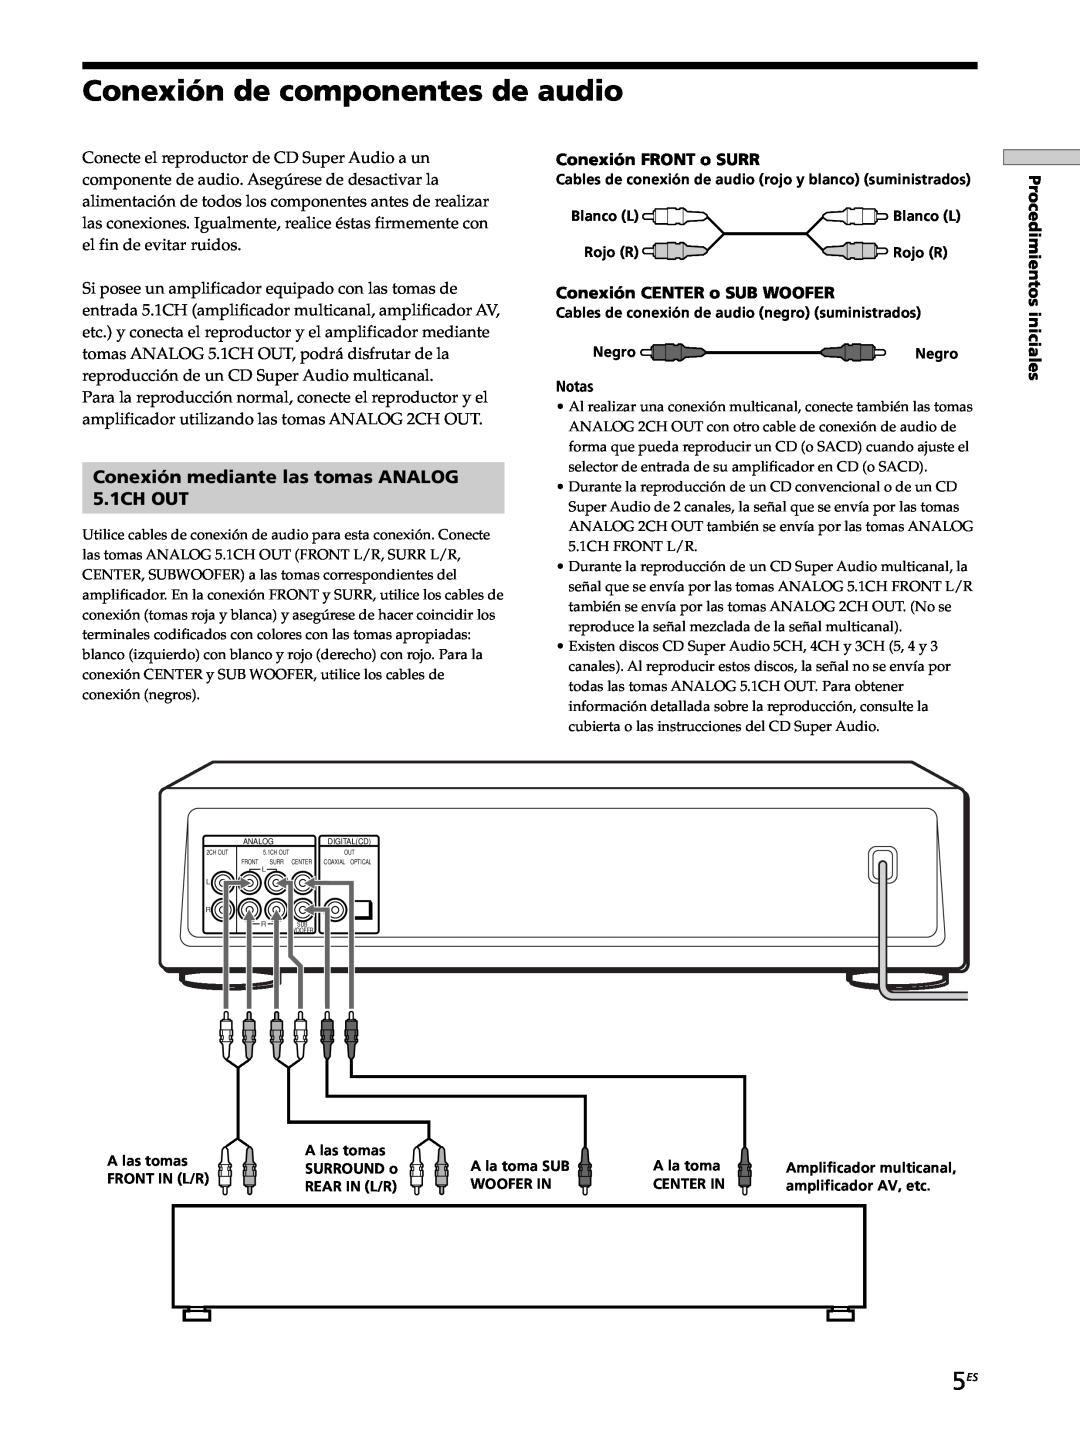 Sony SCD-XB770 operating instructions Conexión de componentes de audio, Conexión mediante las tomas ANALOG 5.1CH OUT 